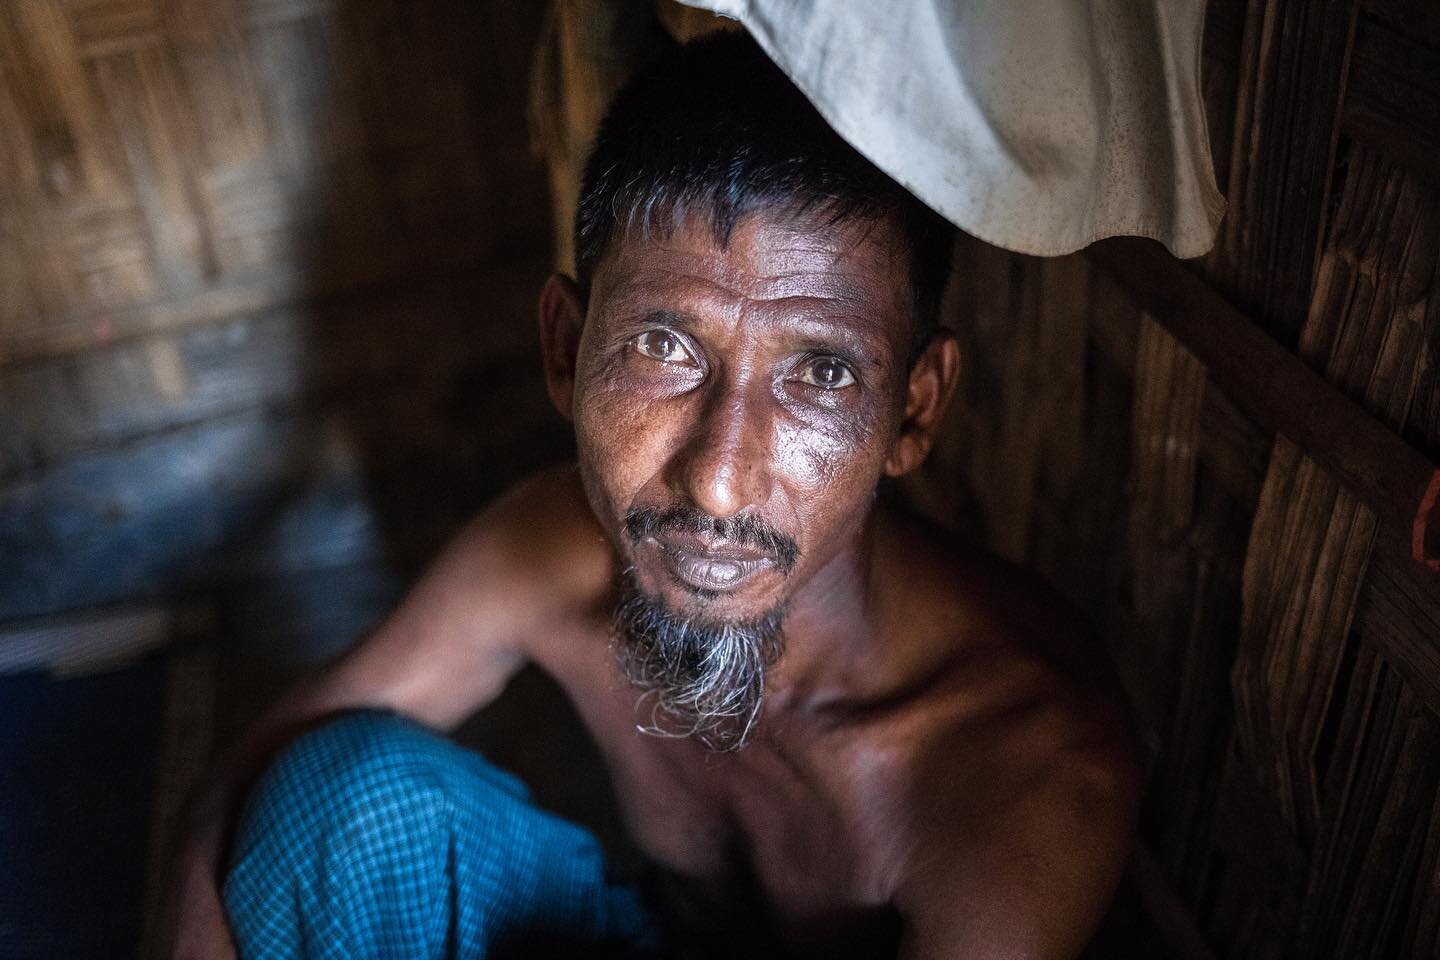 Human reel

Photo by: @nihab_rahman 

#refugees 
#refugeecrisis
#rohingyarefugees
__________________
#humanitarianaid  #refugeecamp  #humaninterest
#balukhalicamp #wewelcomerefugees #kutupalongcamp #documentaryphotography  #unhcr_bgd #unicefbanglades